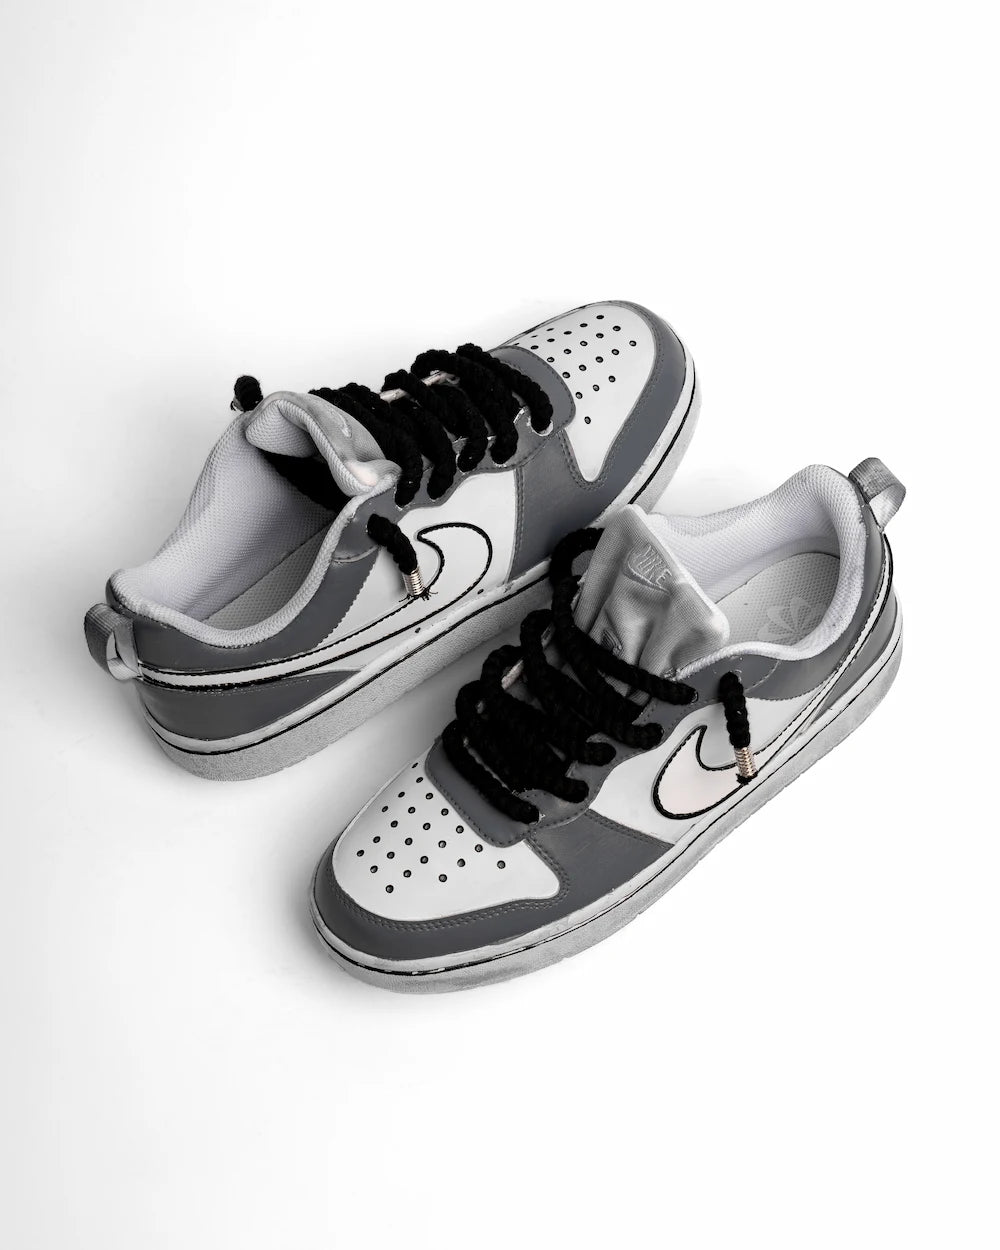 Nike Court Vision custom modello "5 Points Grey", dipinta a mano in due tonalità di grigio, con lacci in corda neri